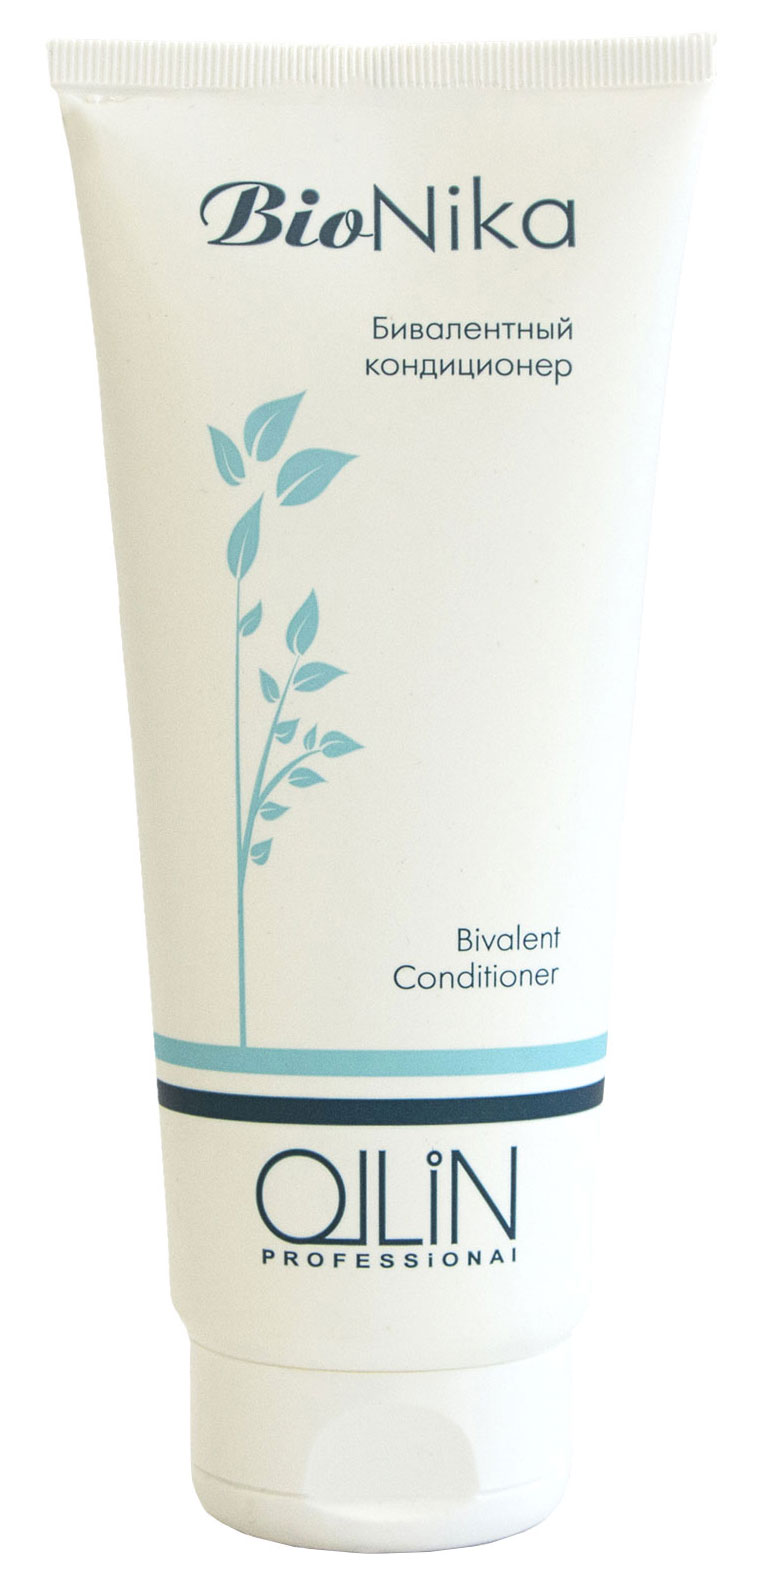 Кондиционер для волос Ollin Professional BioNika Bivalent 200 мл epica professional кондиционер регулирующий работу сальных желез skin balance